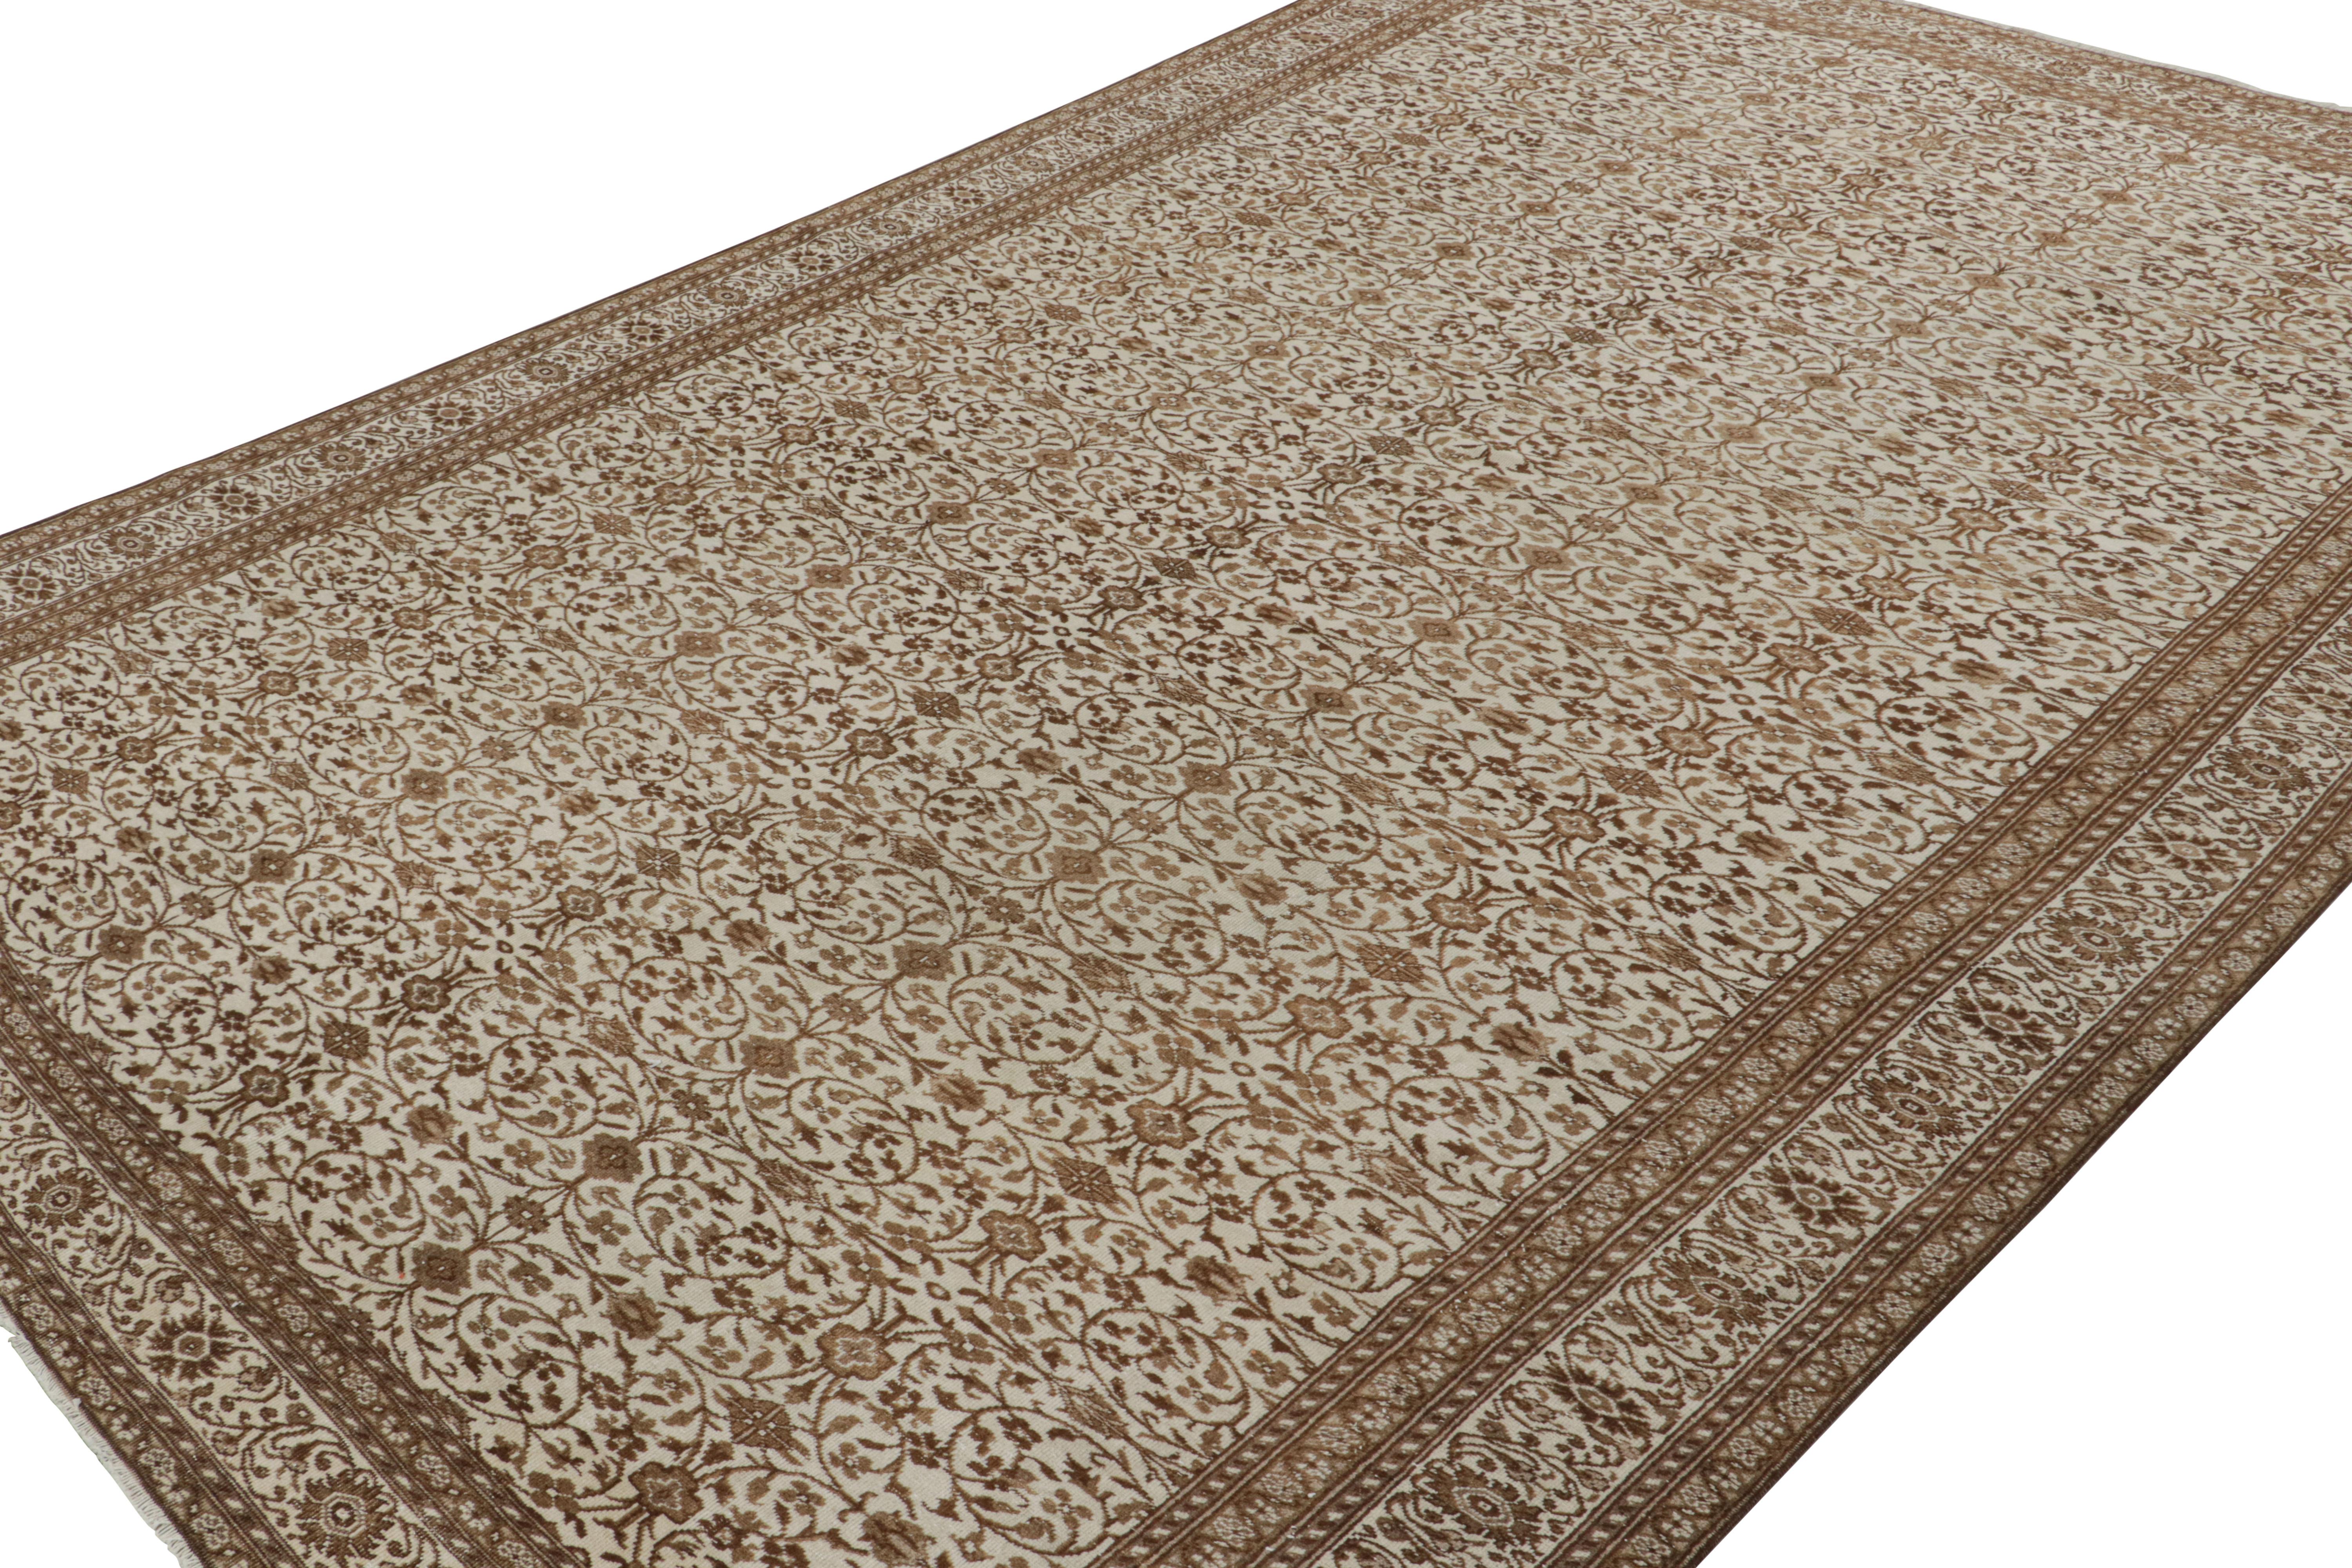 Dieser 8x12 große, handgeknüpfte Sivas-Teppich aus Wolle (ca. 1950-1960) weist komplizierte Herati-Muster in satten Brauntönen auf, die sich über die gesamte beigefarbene Oberfläche erstrecken und weiße Akzente aufweisen. 

Über das Design: 

Die